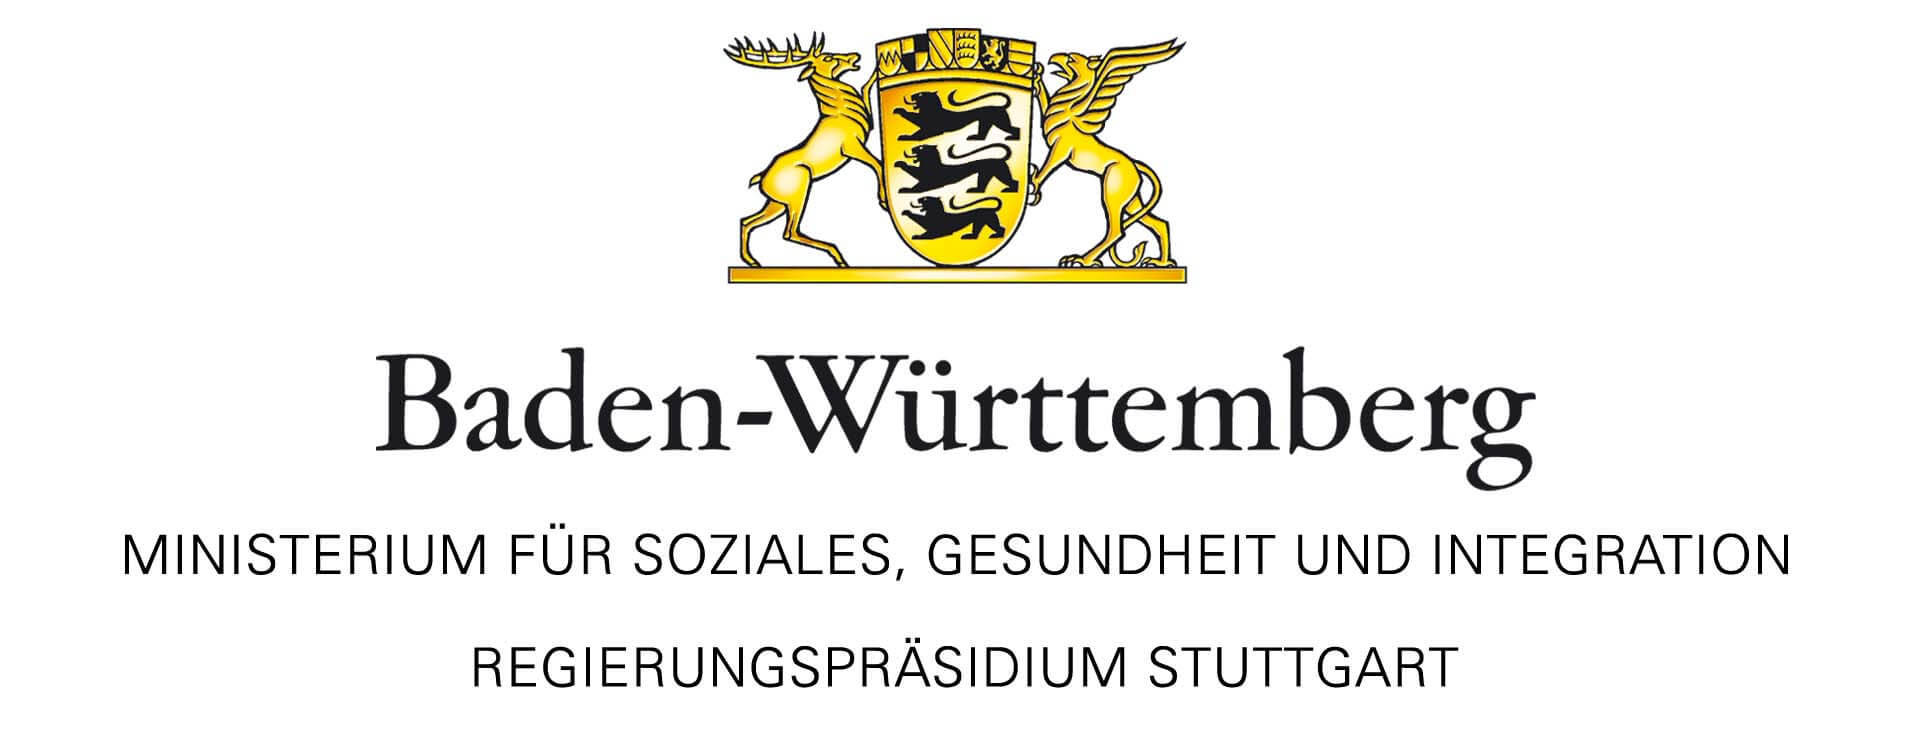 ministerium-soziales-gesundheit-integration-baden-wuerttemberg-rp-stuttgart